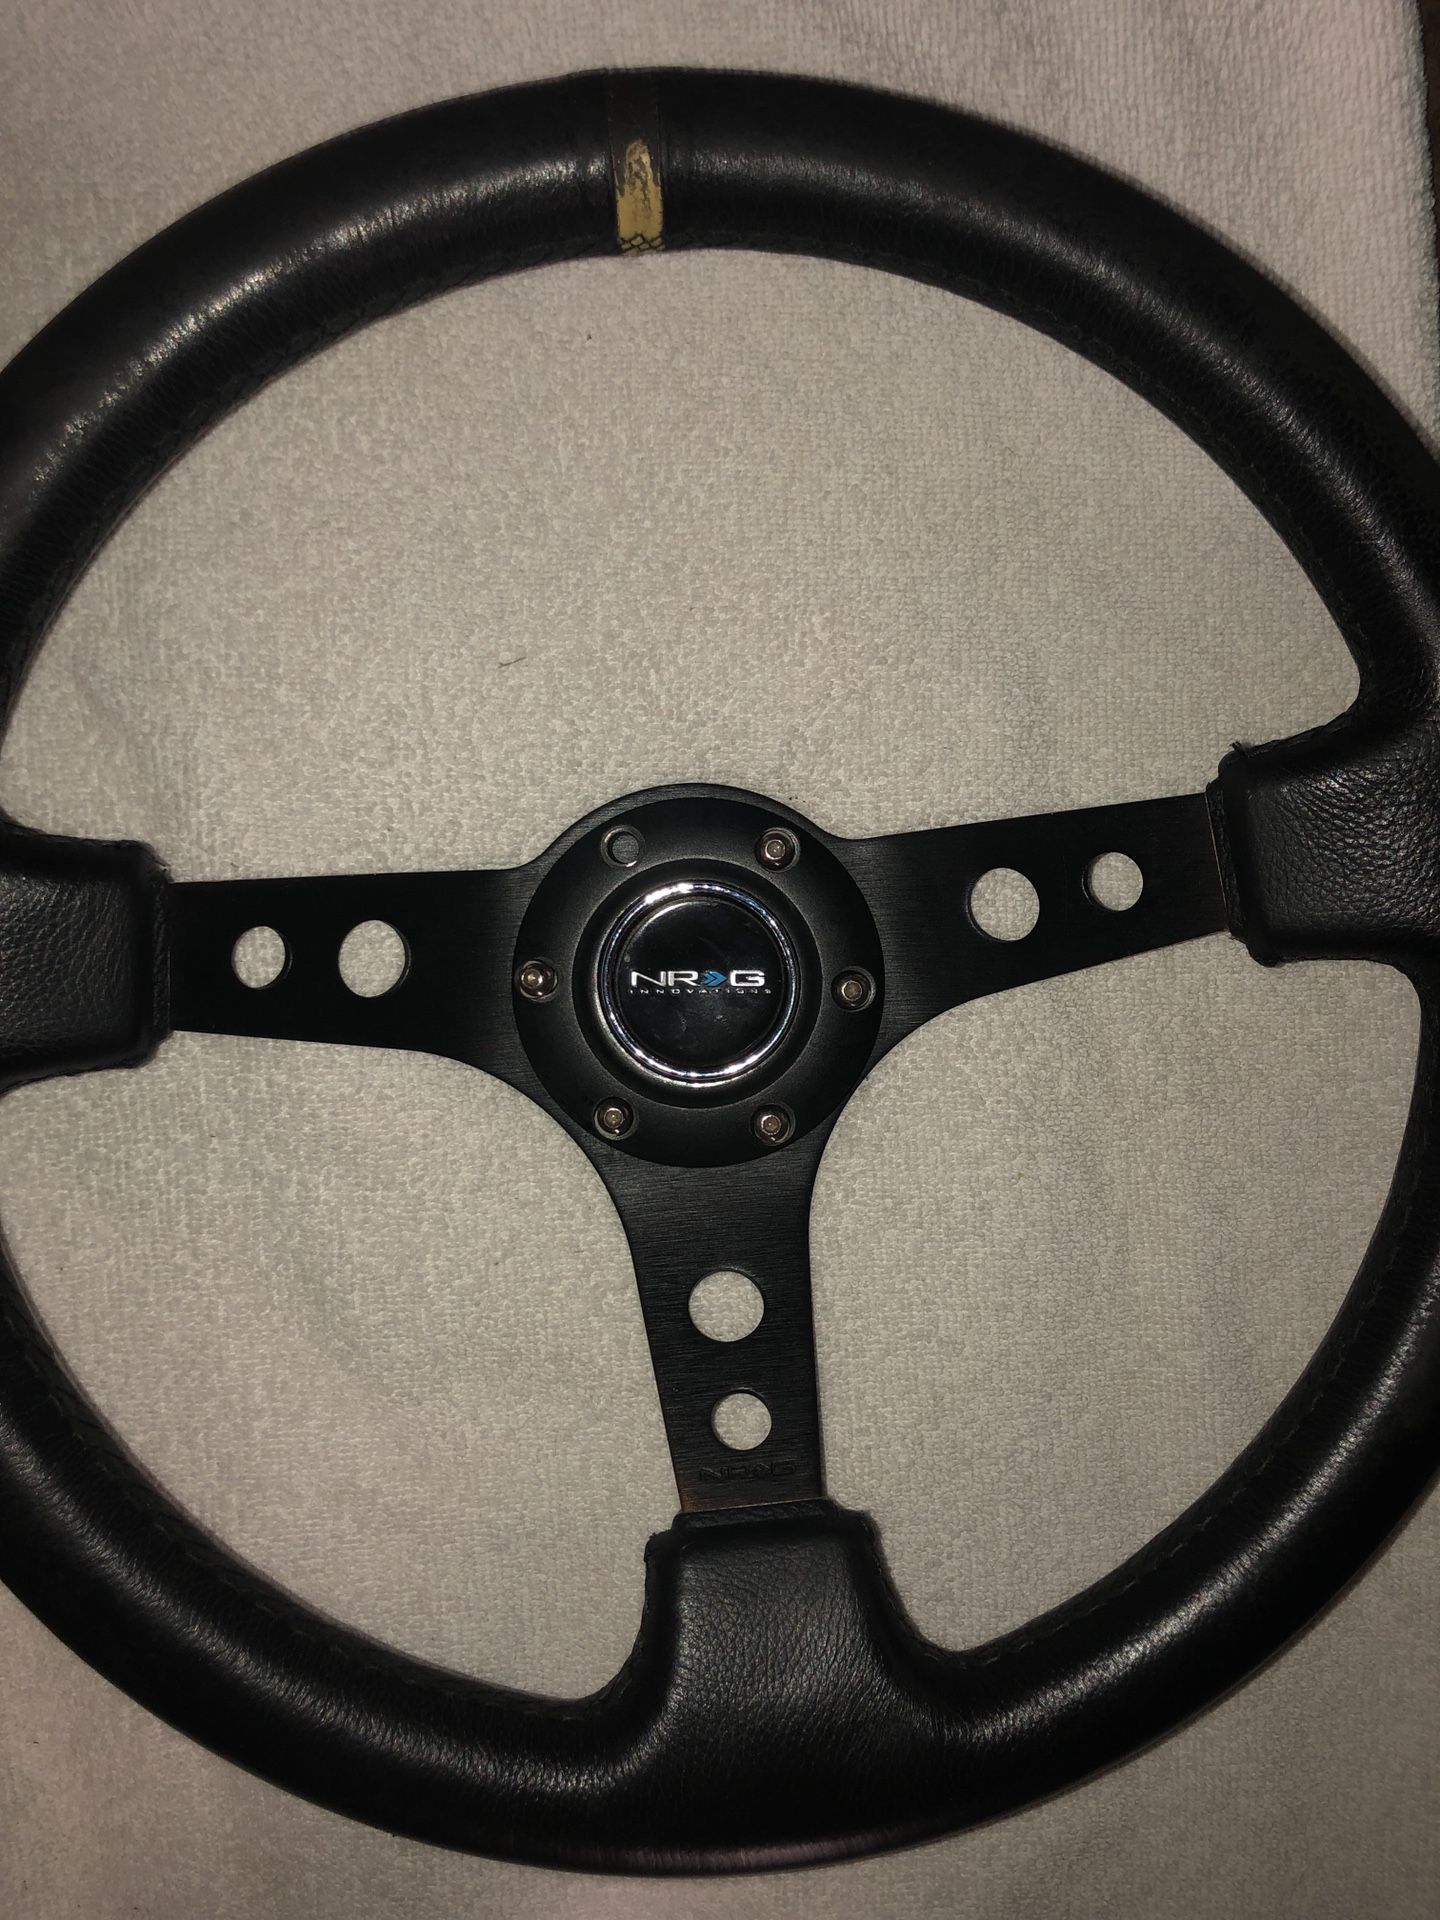 Nrg steering wheel